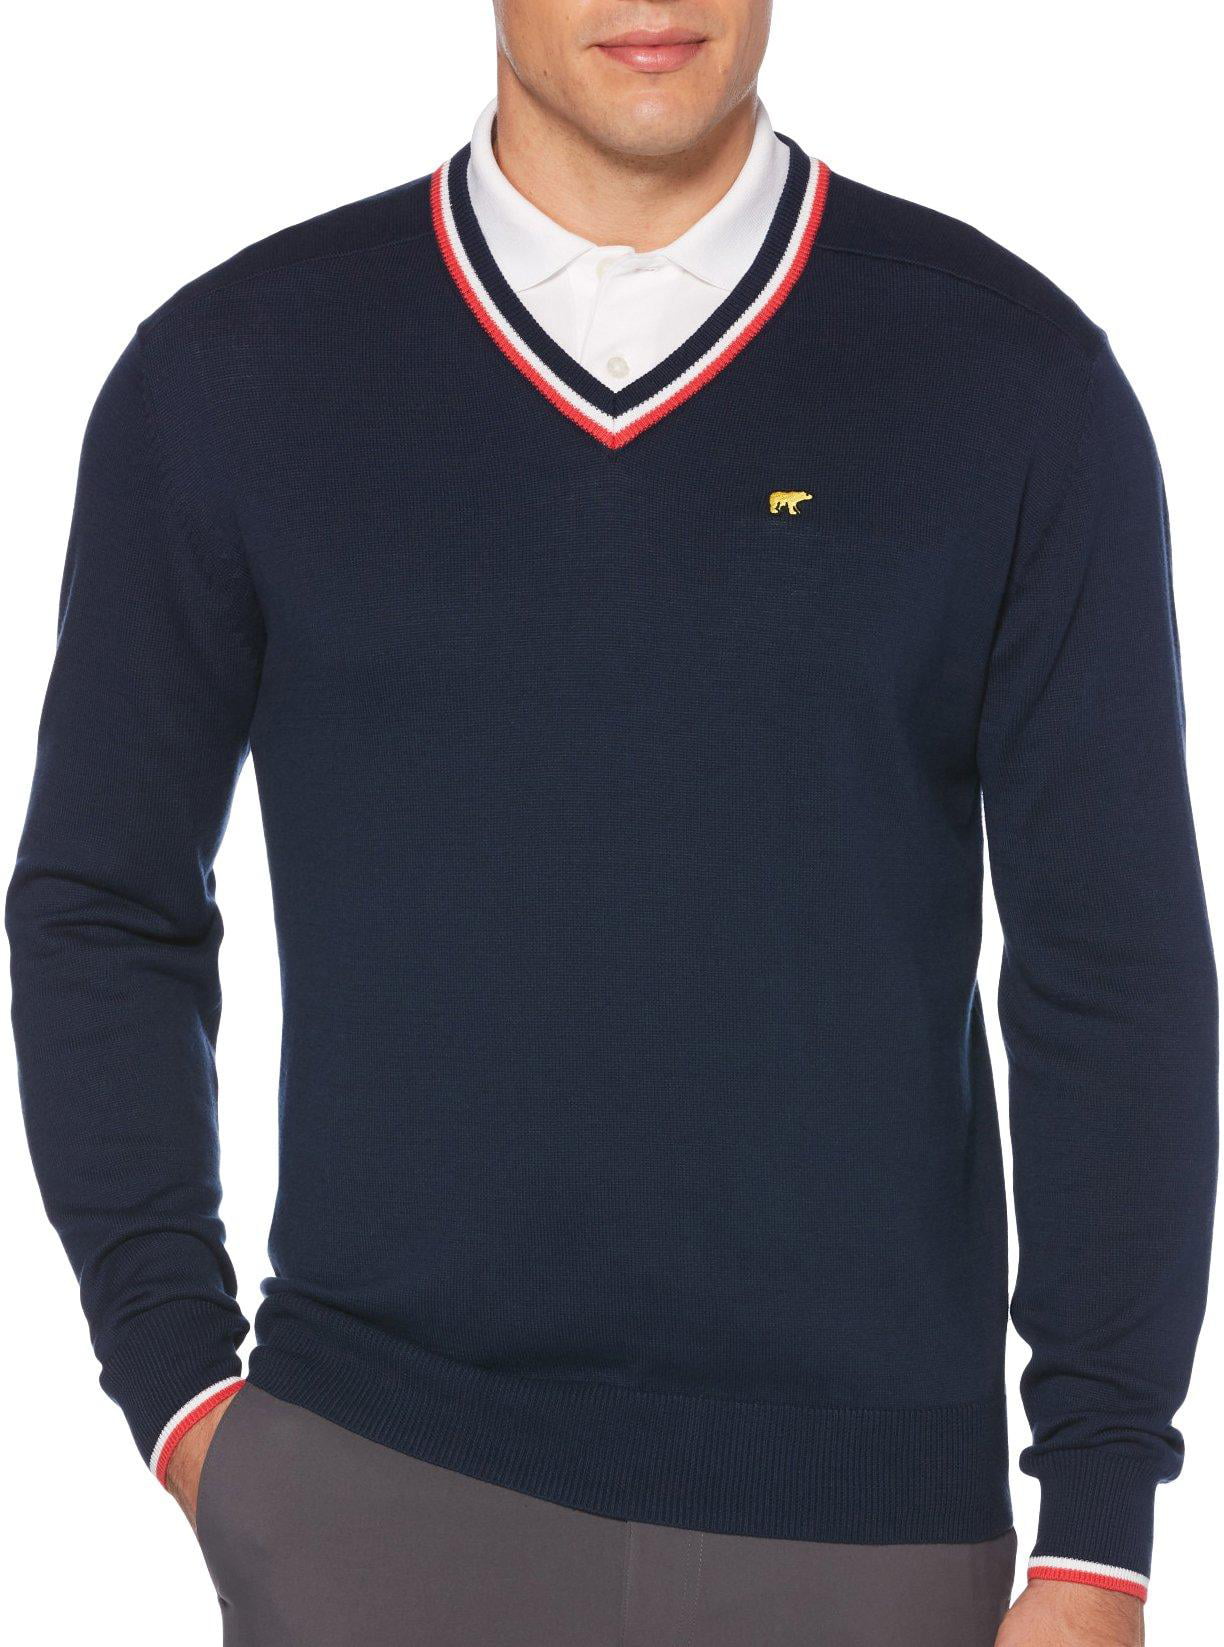 Jack Nicklaus - Jack Nicklaus Mens Solid Stripe V-Neck Sweater 16W ...